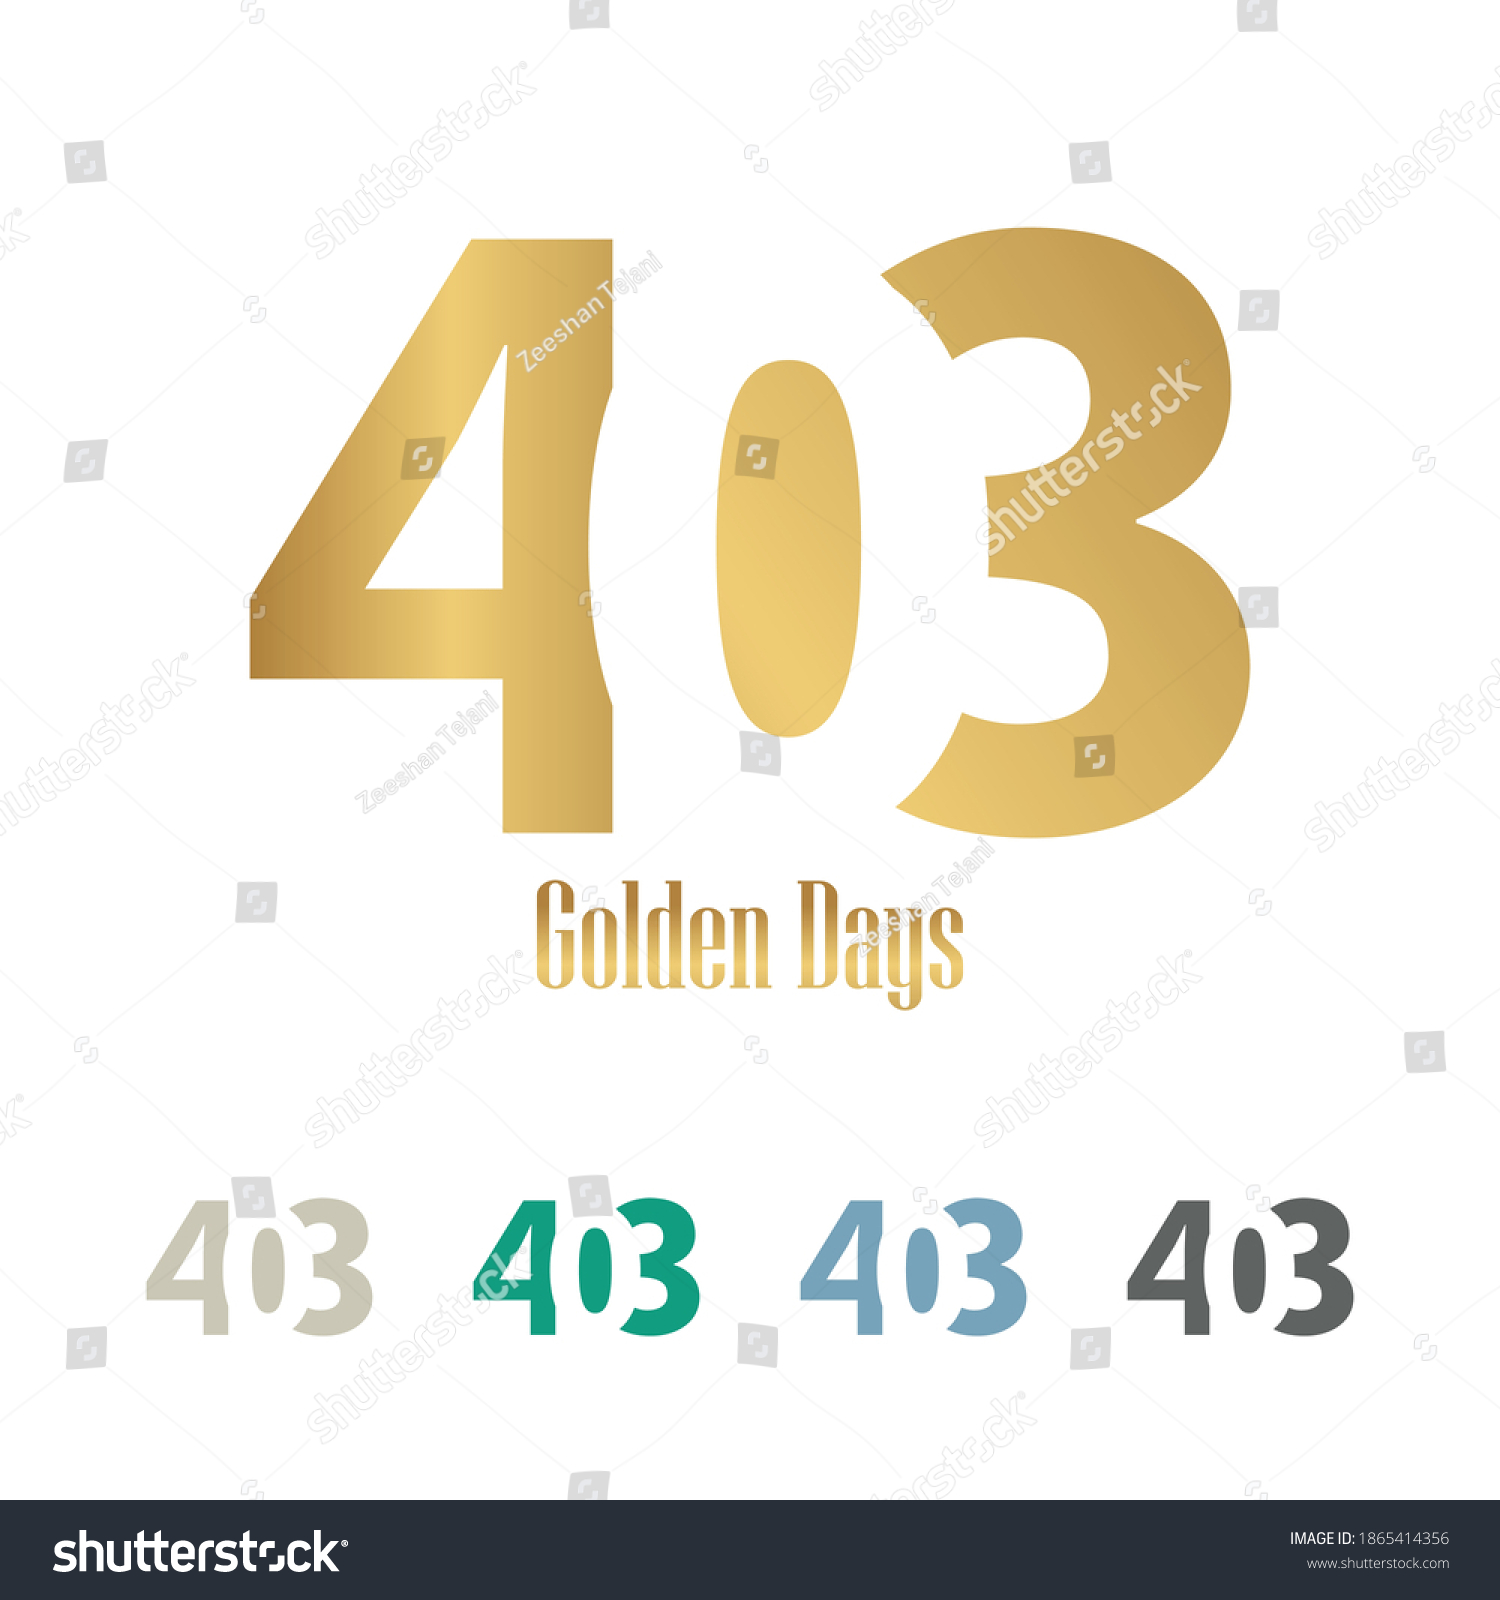 SVG of 403 lettertype vector logo design 403 golden days svg